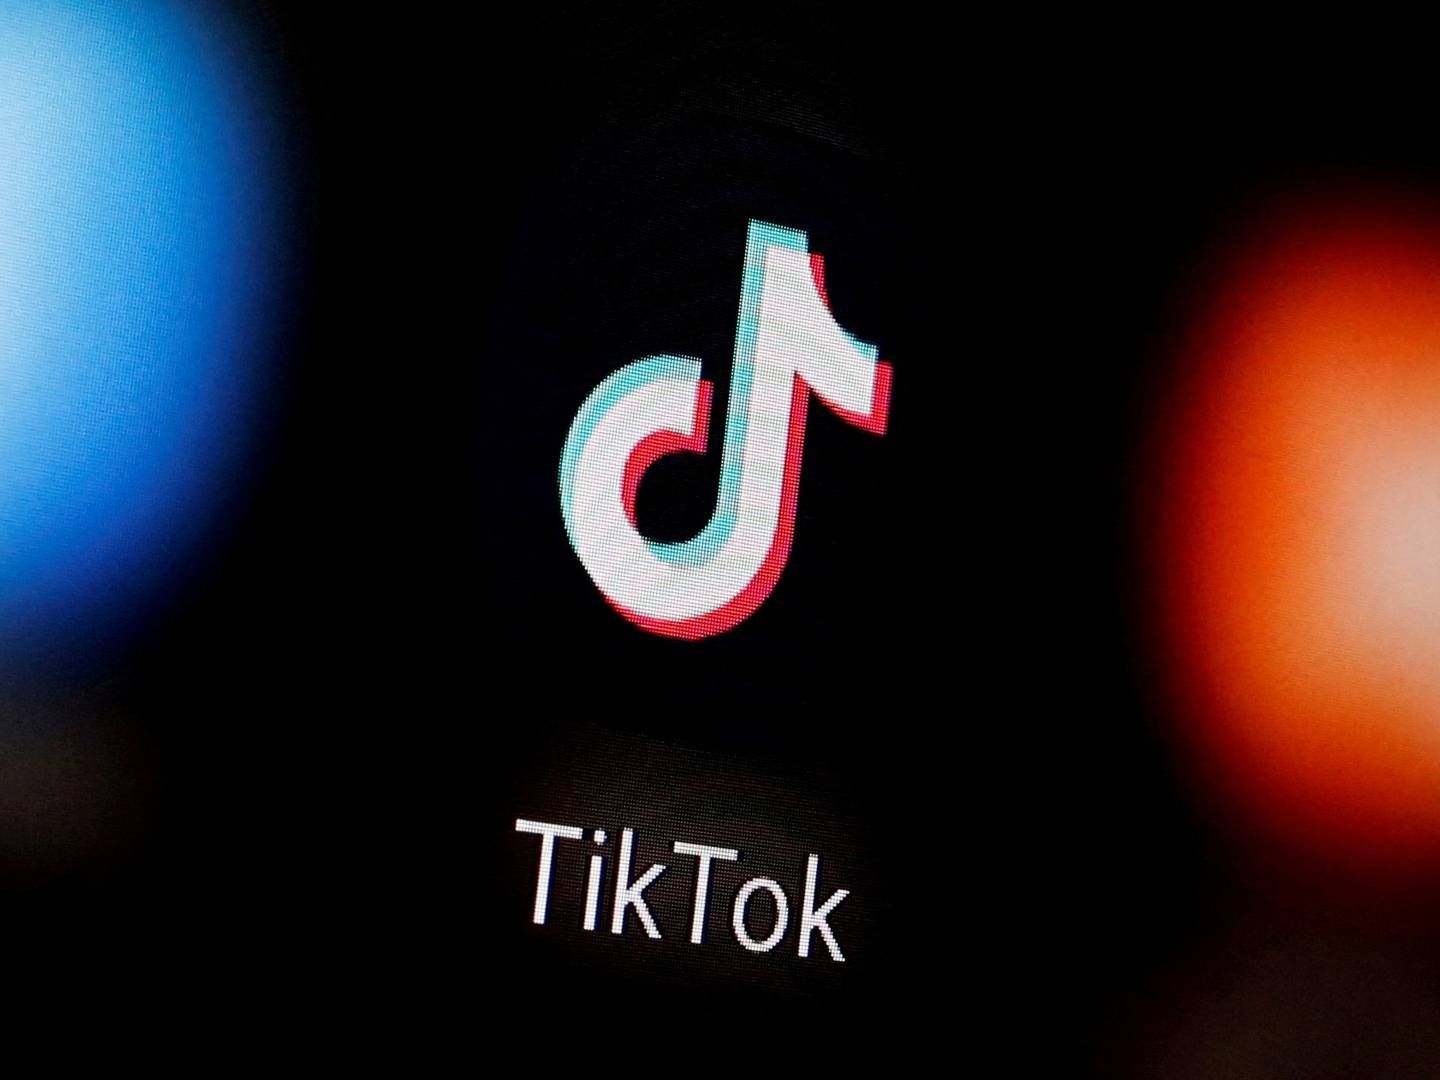 Tiktok vil investere flere mia. dollar i e-commerce i Sydøstasien. Hele området genererer Tiktok mere end 325 mio. besøgende til appen hver måned. | Foto: Dado Ruvic/Reuters/Ritzau Scanpix